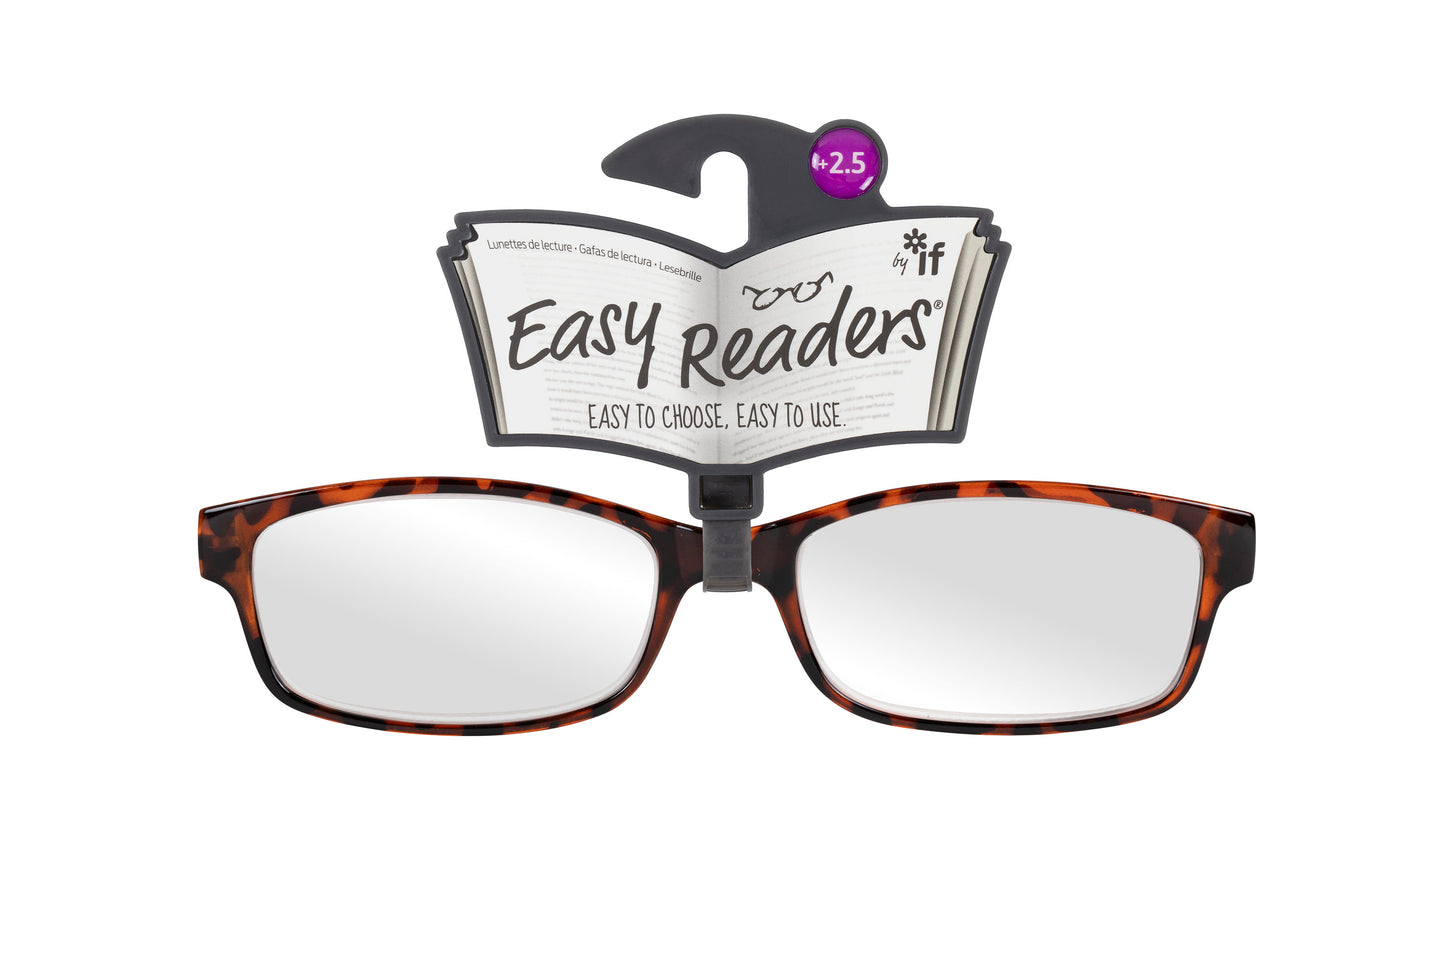 Easy Readers Reading Glasses - Classic Tortoiseshell